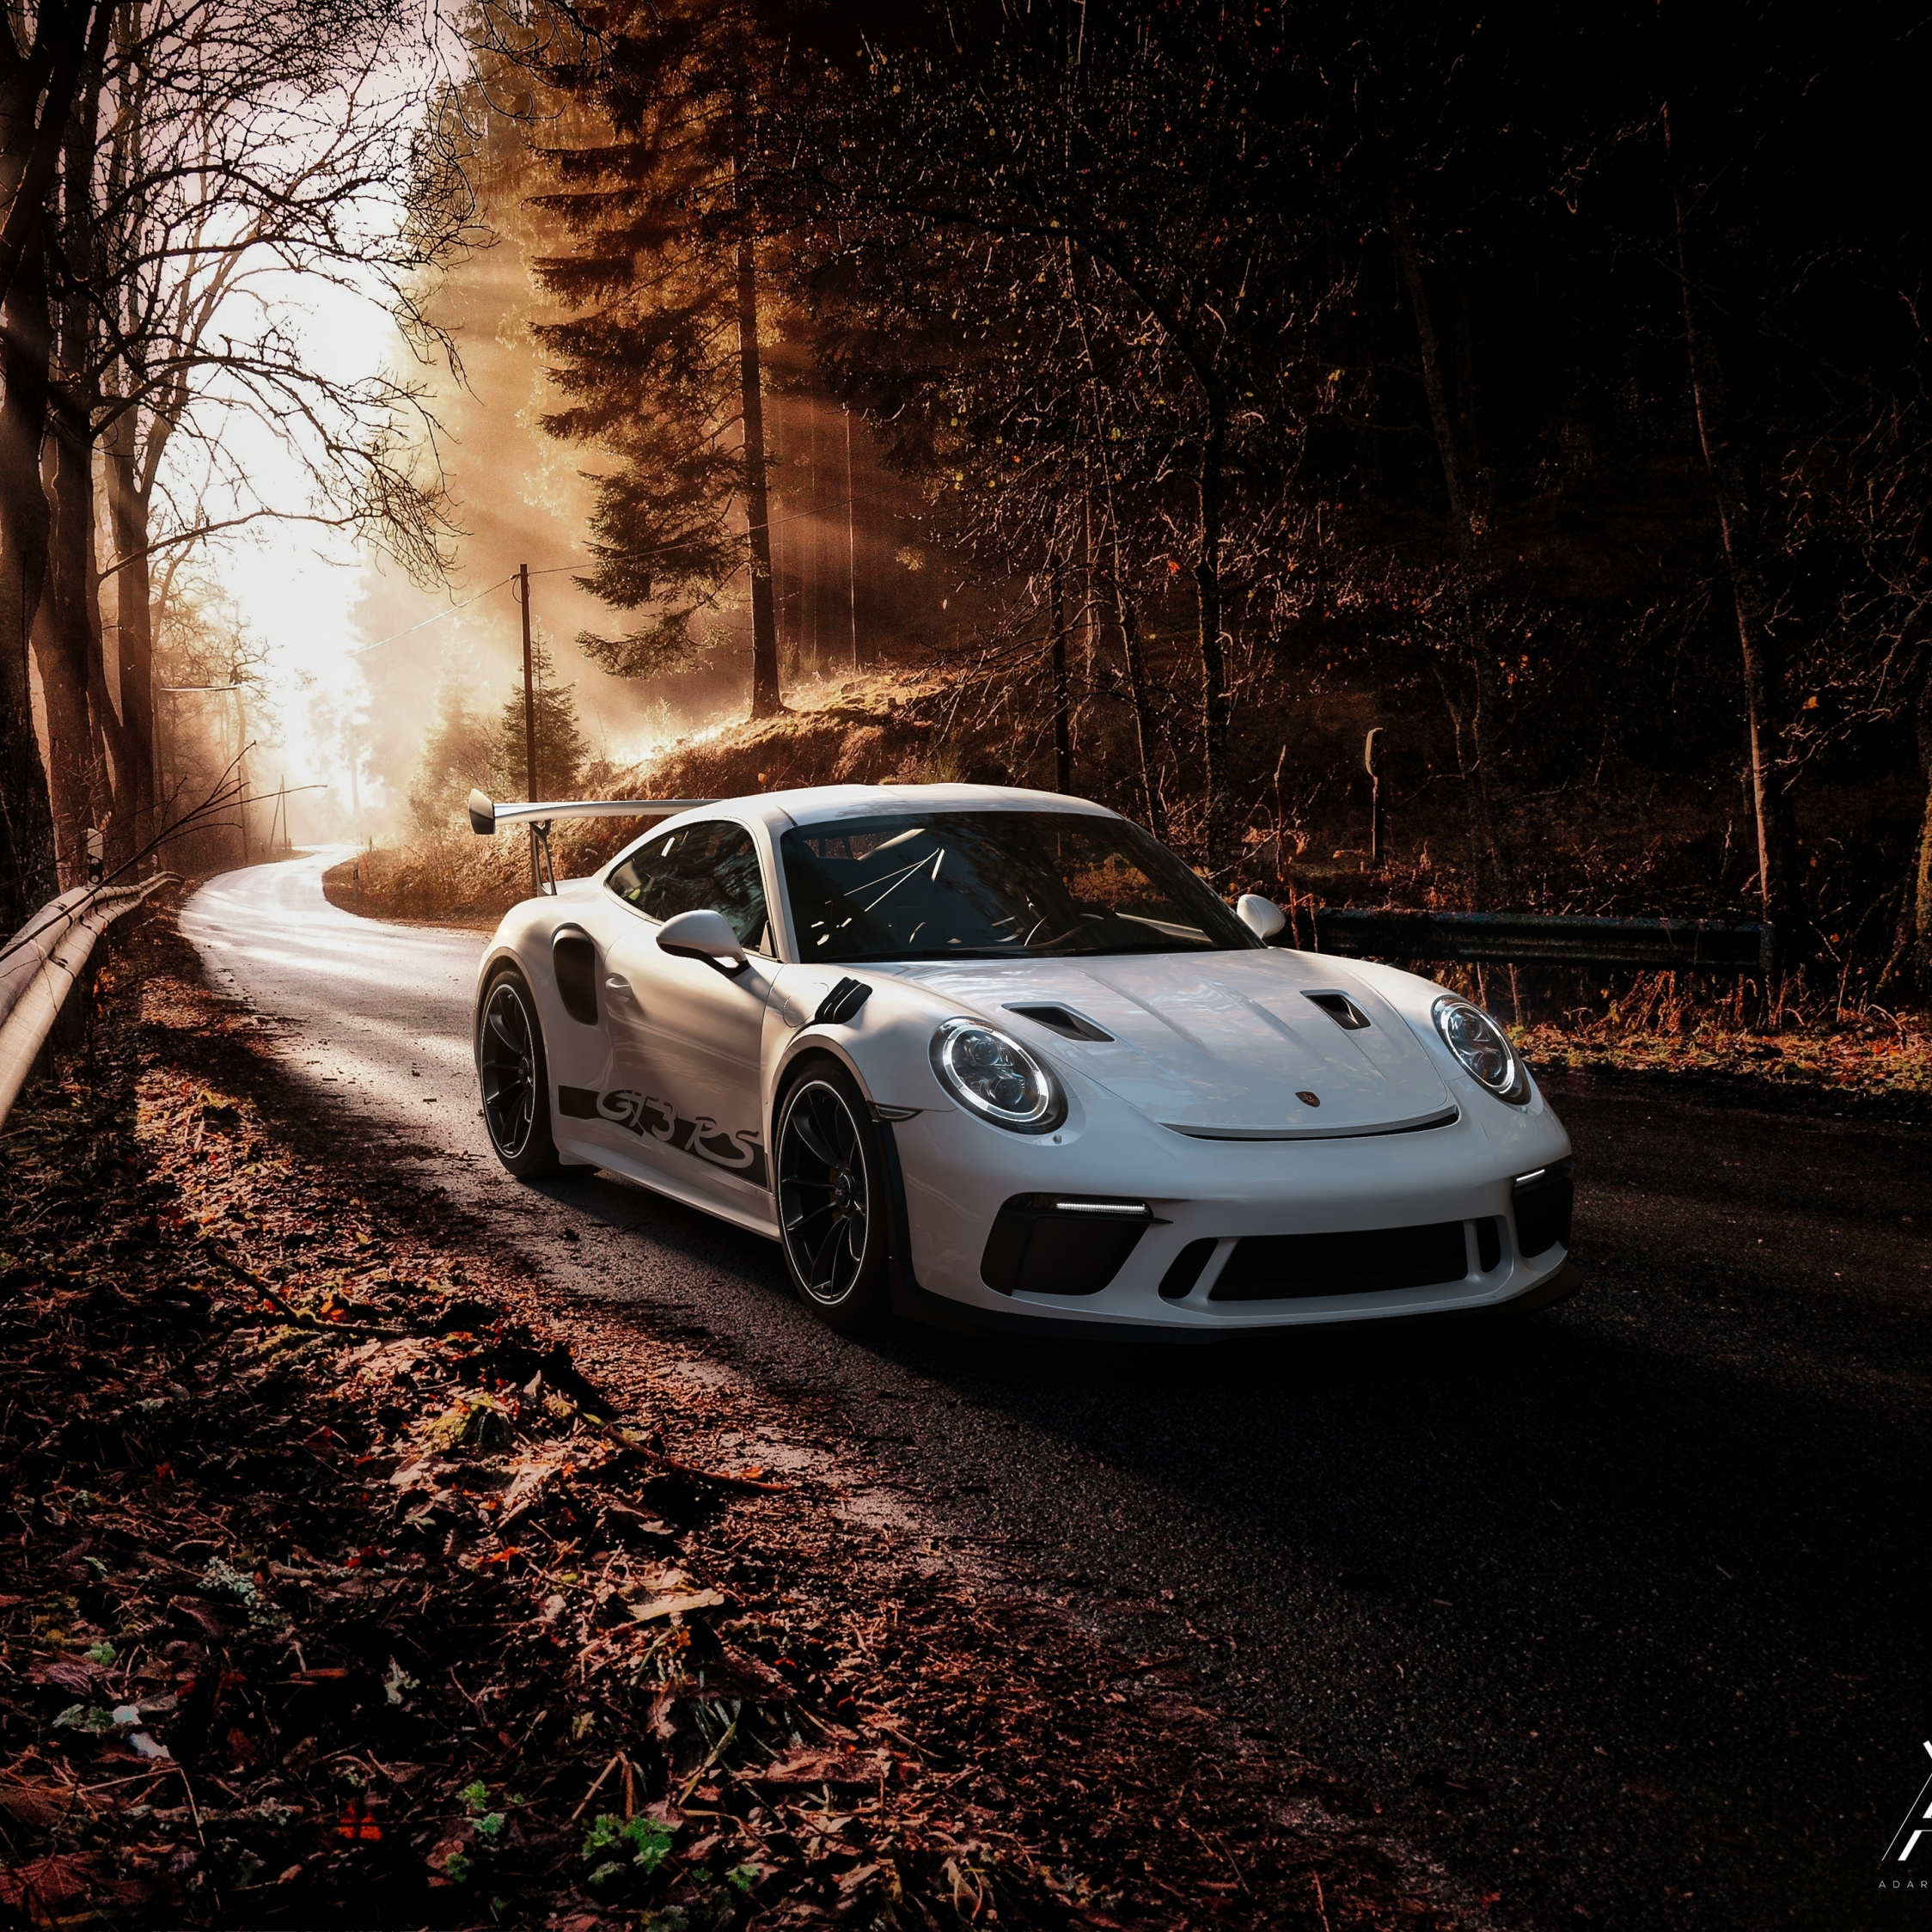 Porsche 911 Gt3 Rs, 2019, Wallpaper - 2019 Porsche 911 Gt3 Rs , HD Wallpaper & Backgrounds